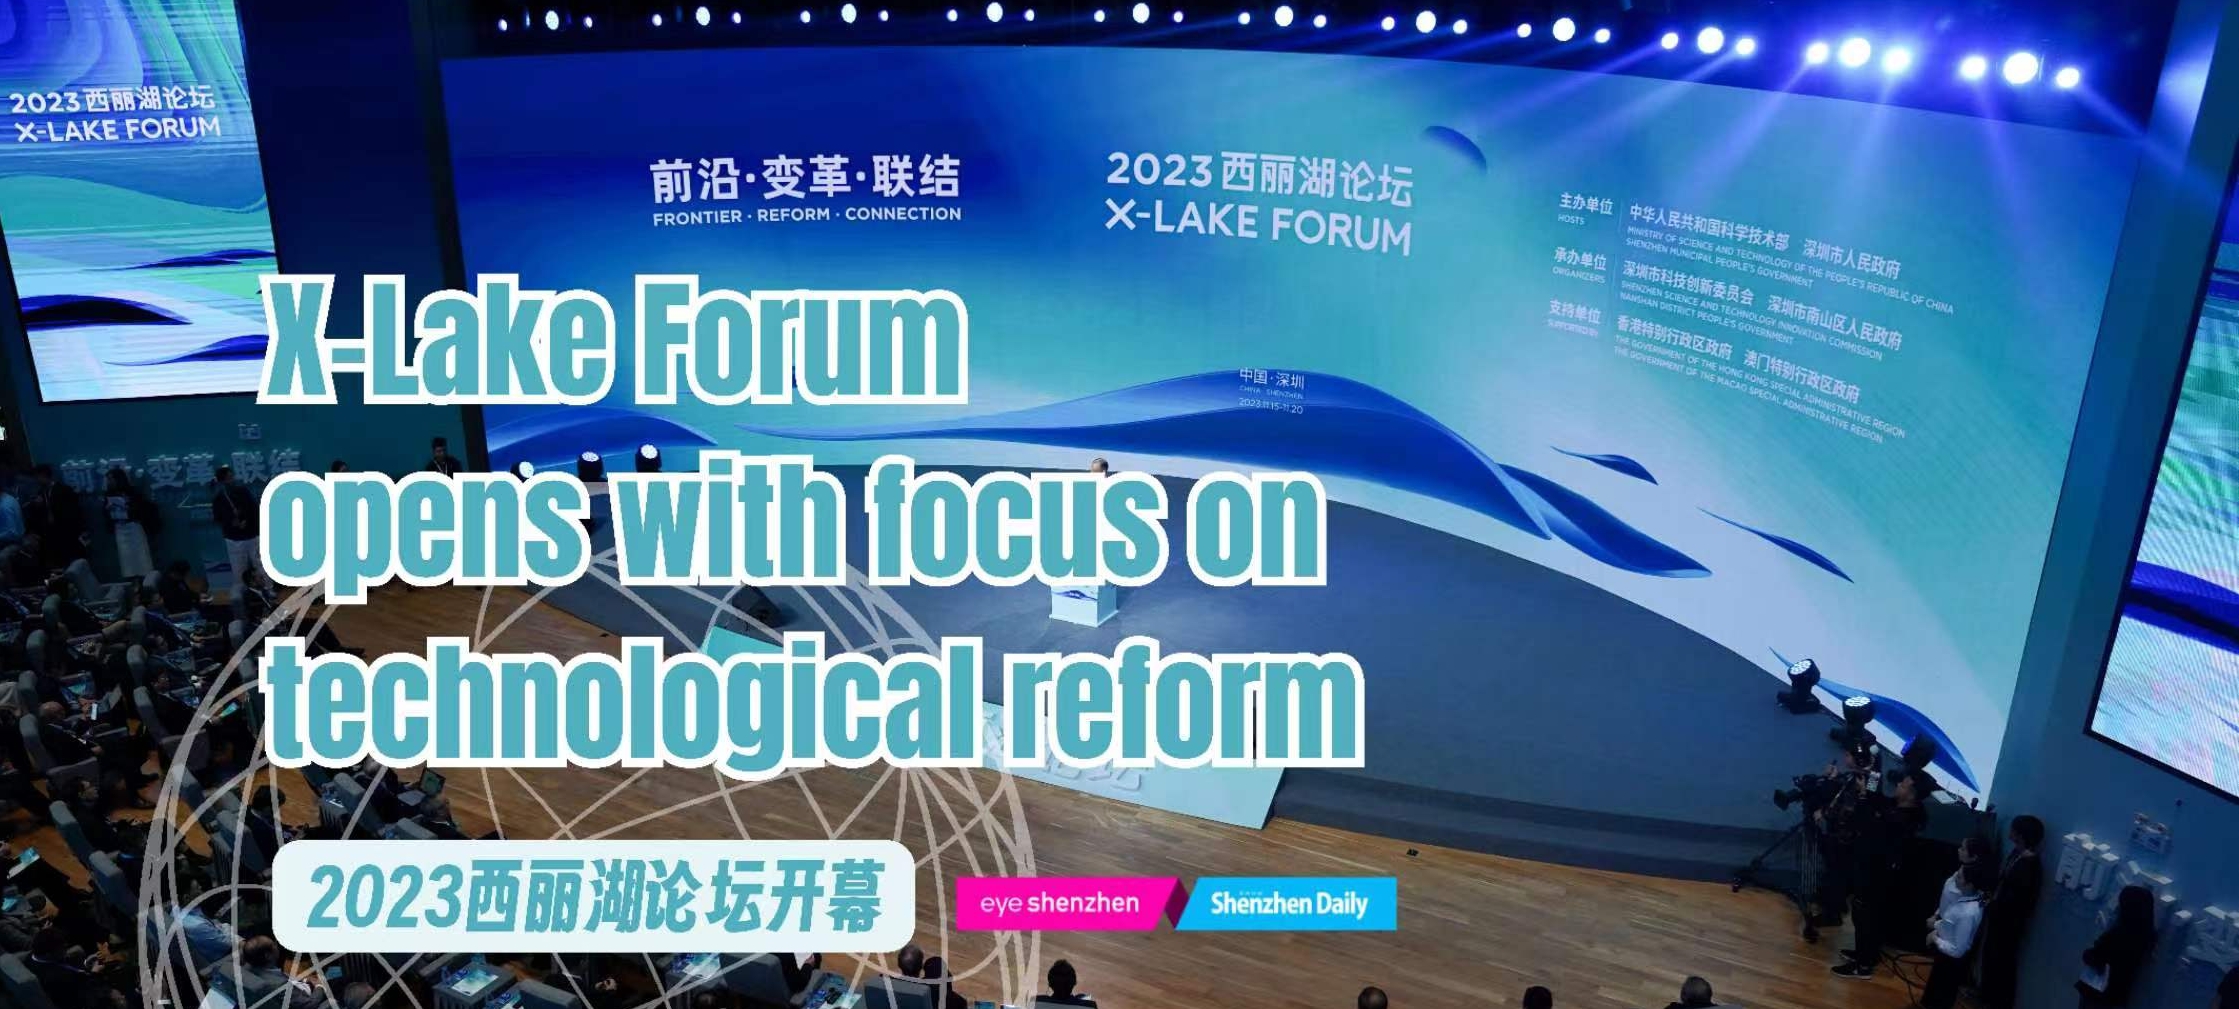 Le Forum du Lac-X s'ouvre avec l'accent sur la réforme technologique